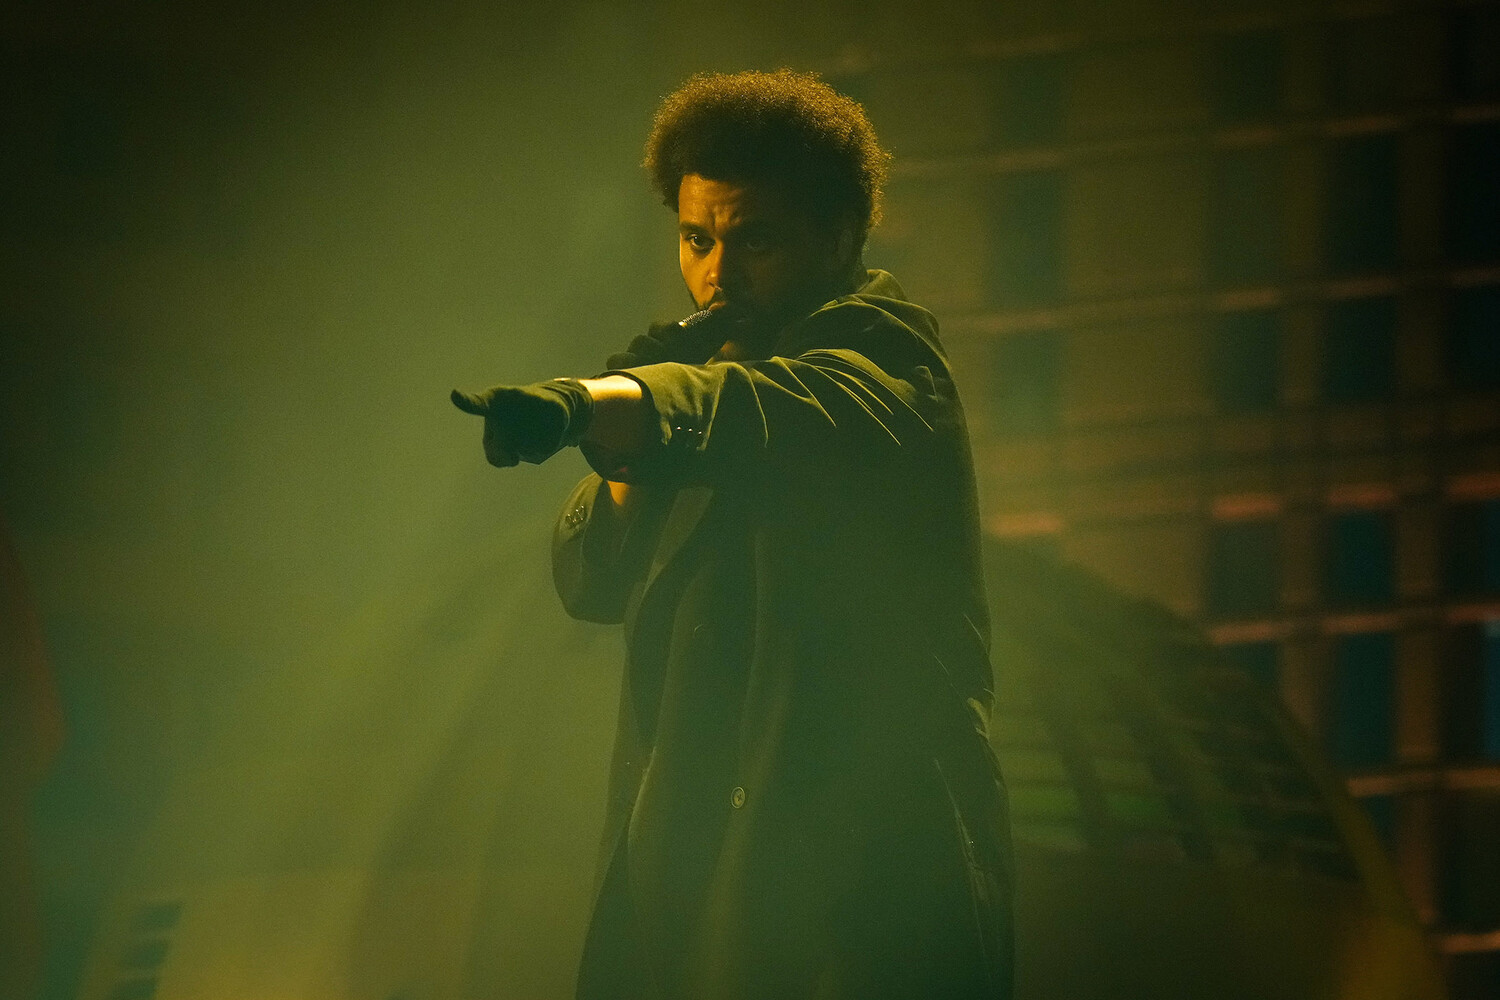 Певец The Weeknd впервые сыграет главную роль в художественном фильме по собственному сценарию